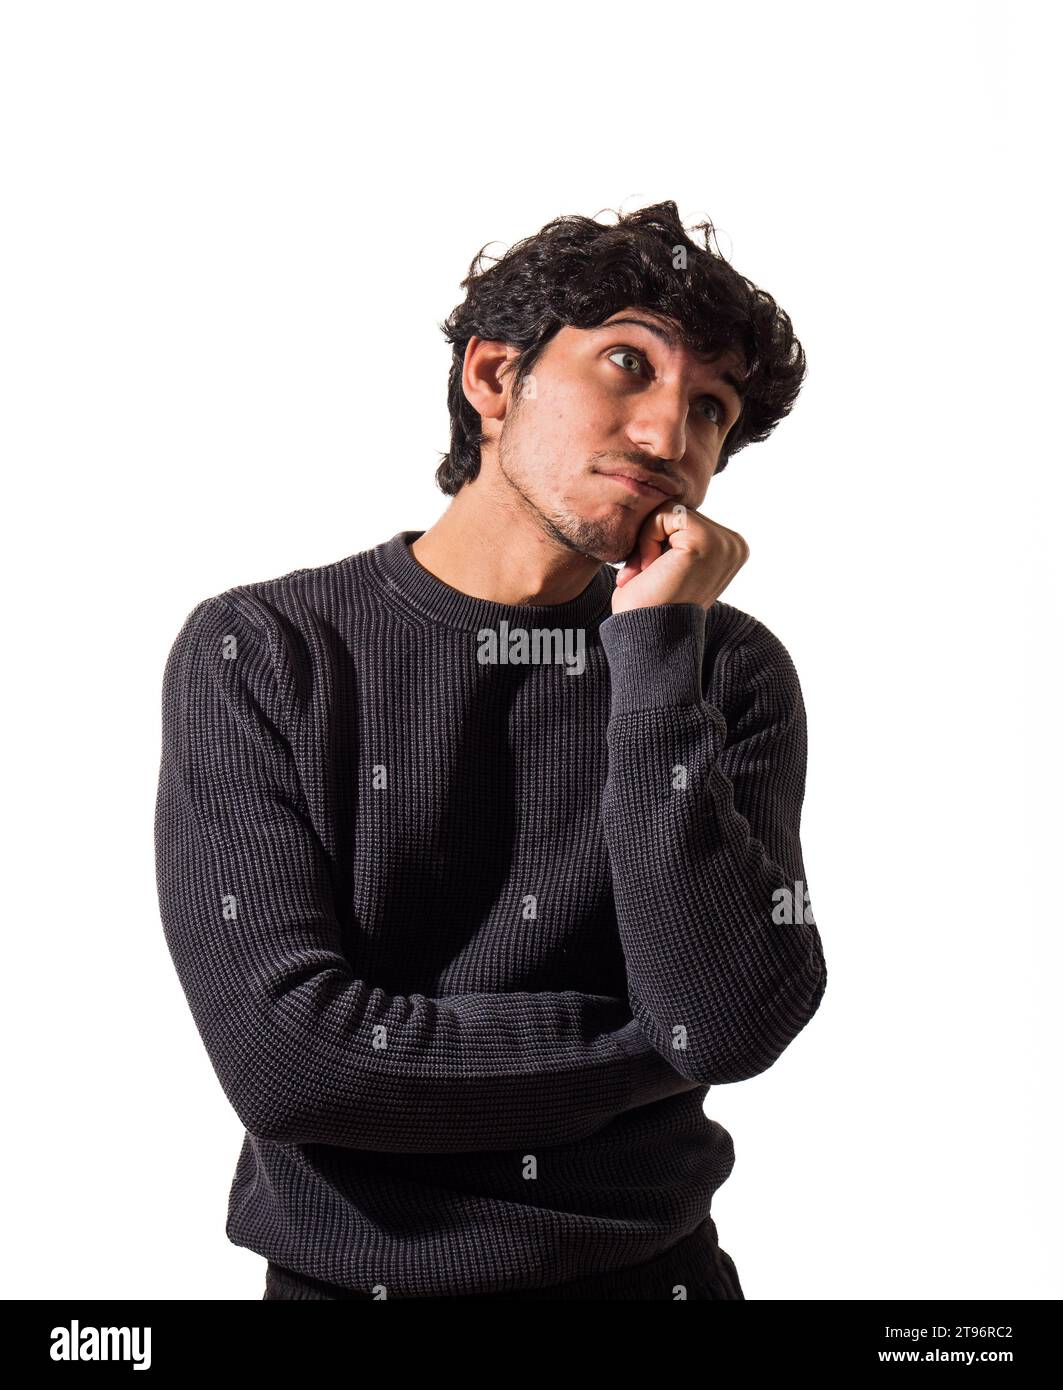 Ein Mann mit lockigen Haaren, der einen schwarzen Pullover trägt, denkt, enttäuscht oder traurig, im Studio Stockfoto